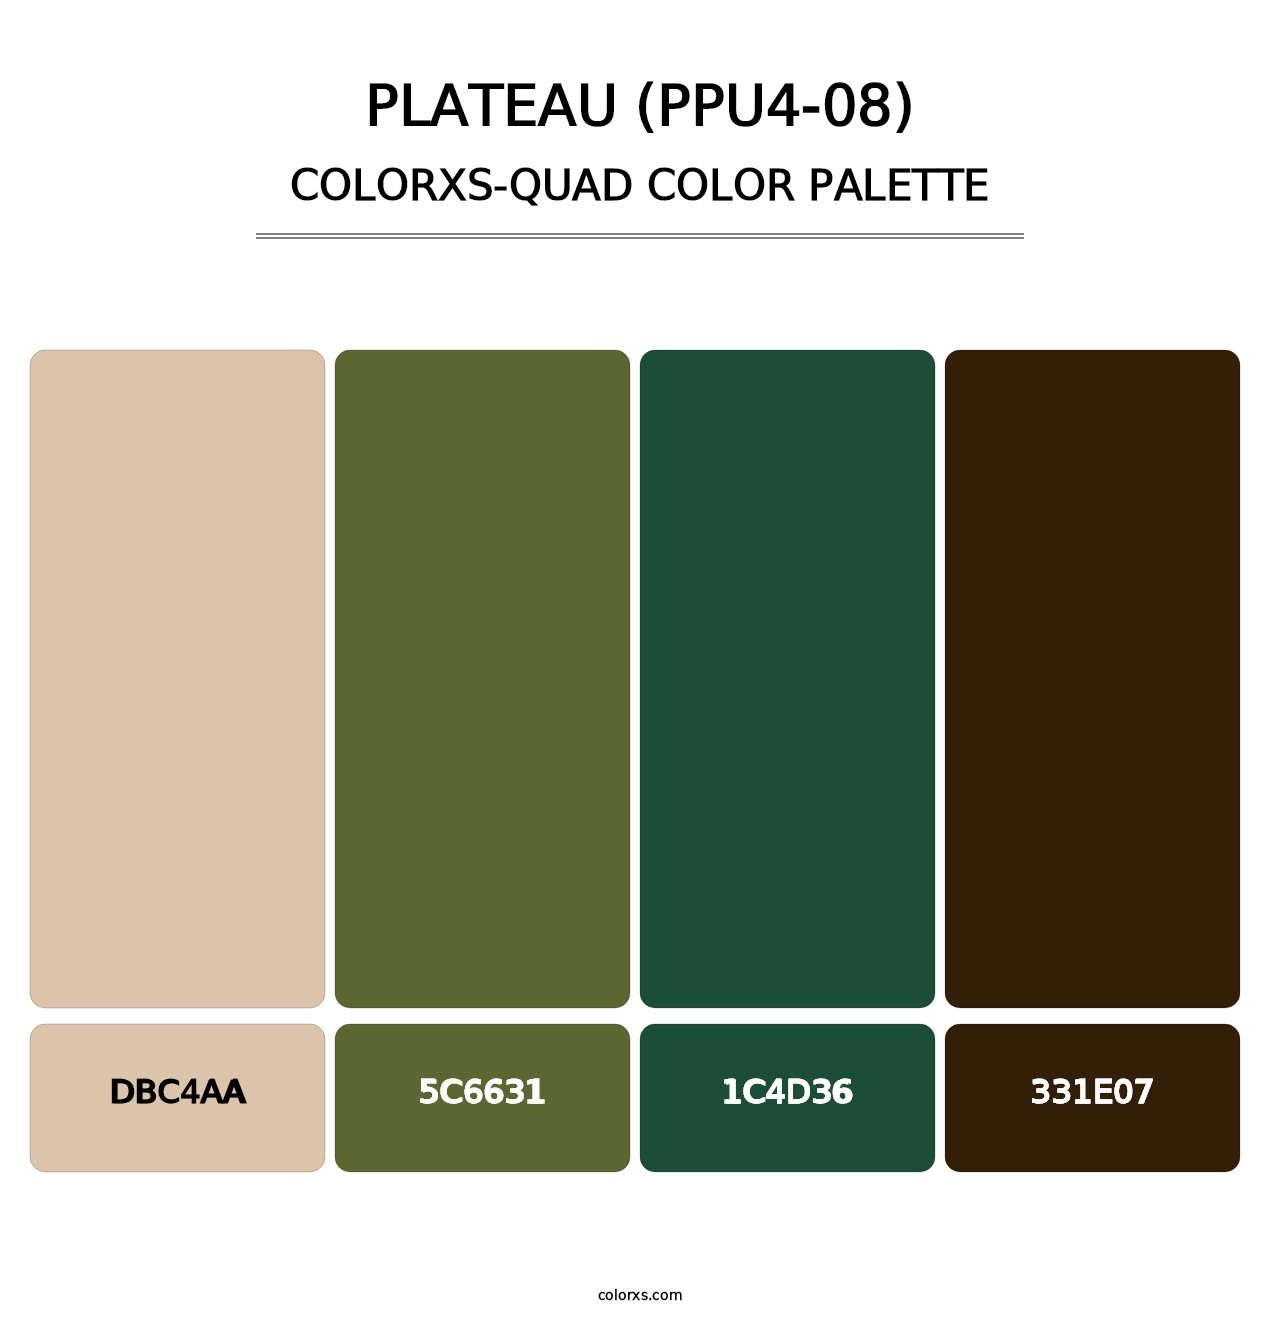 Plateau (PPU4-08) - Colorxs Quad Palette